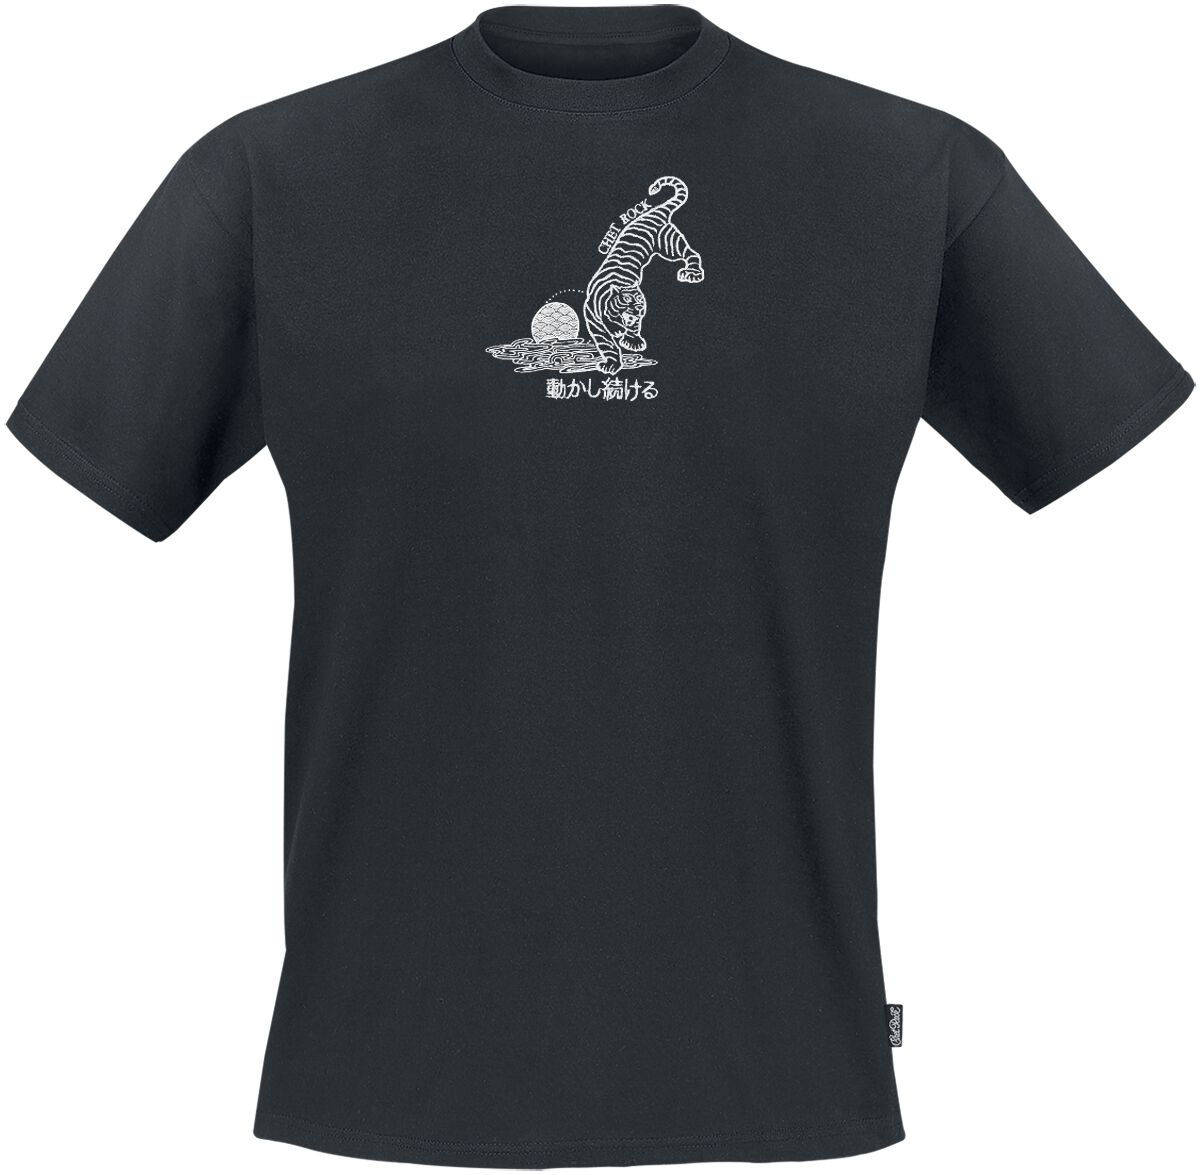 Chet Rock Crouching Tiger T-Shirt schwarz in L von Chet Rock